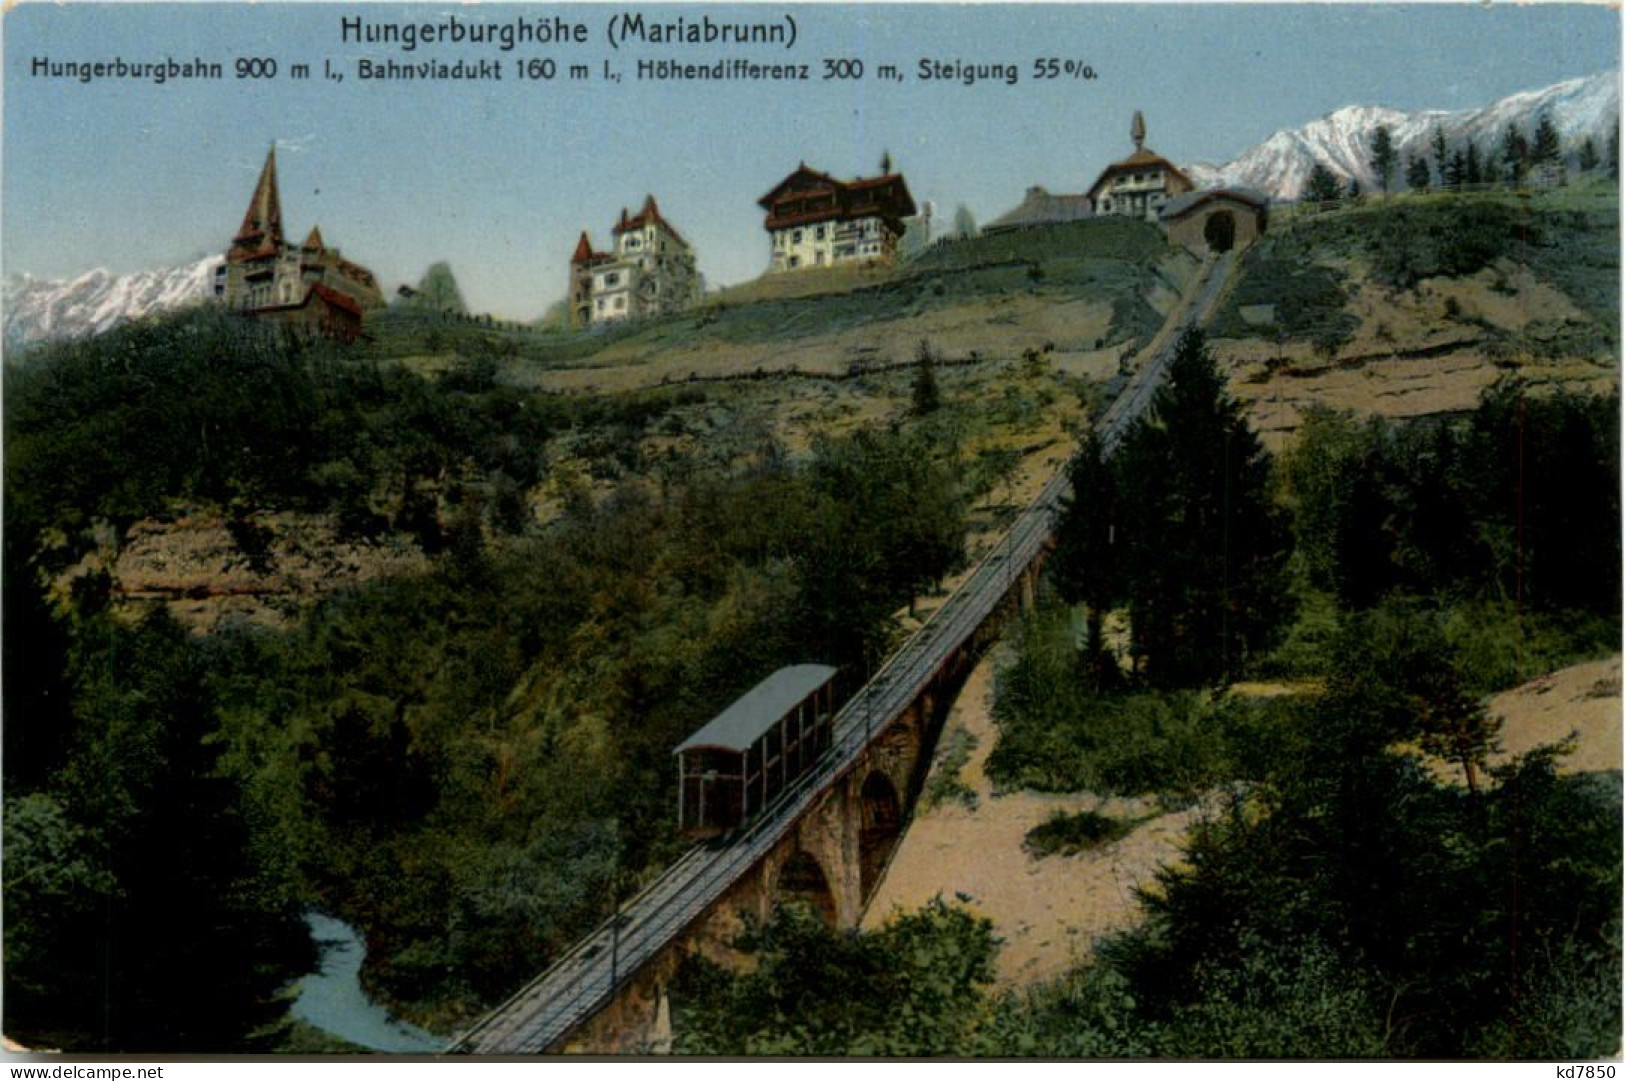 Hindenburghöhe - Mariabrunn - Hungerburgbahn - Innsbruck